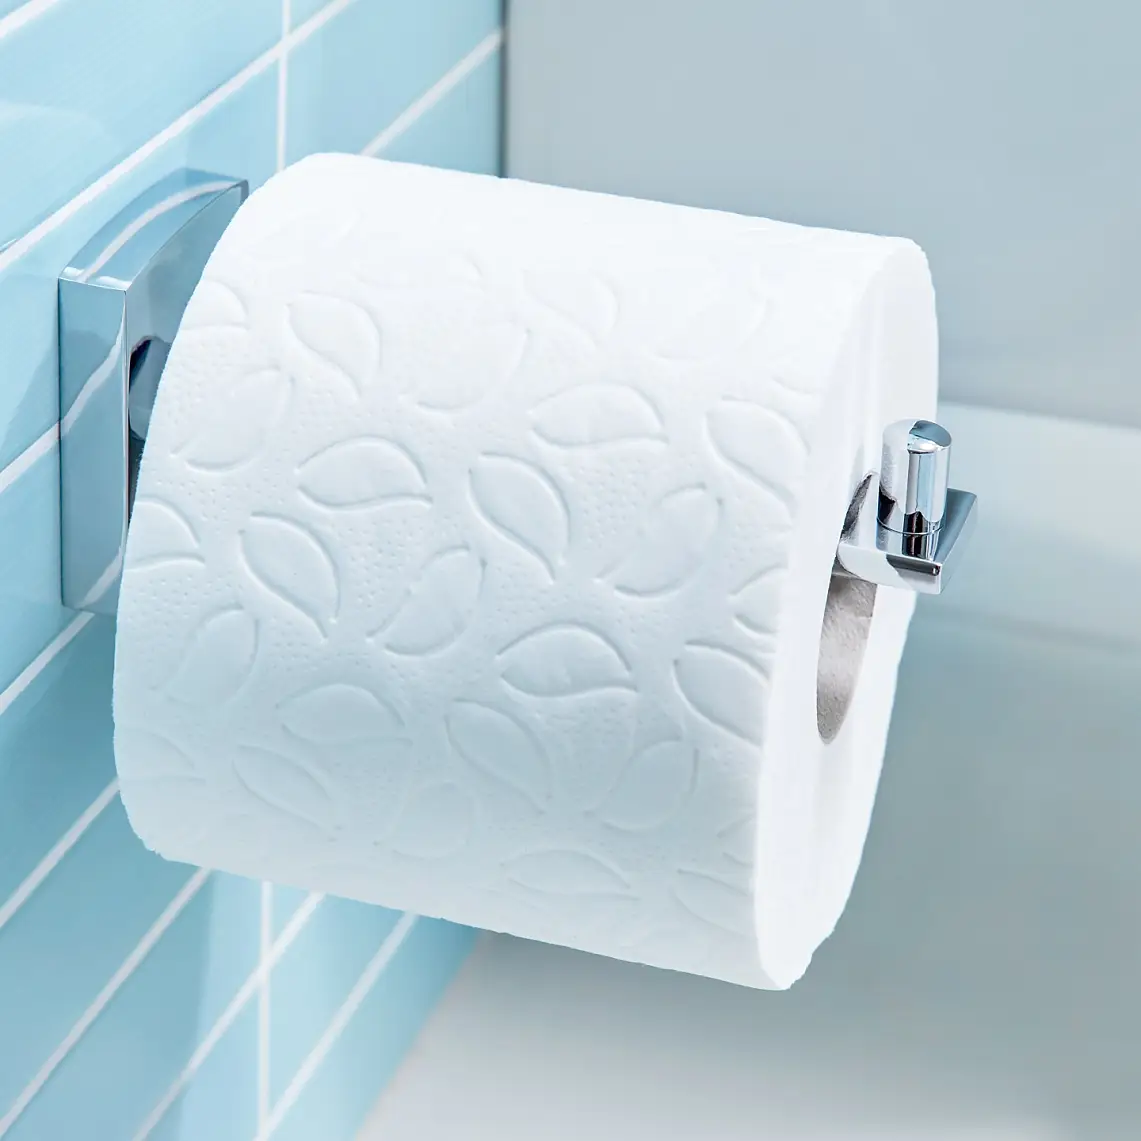 Egyszerű kialakítású termékek, amelyek gondoskodnak arról, hogy mindig kéznél legyen a toalettpapír.